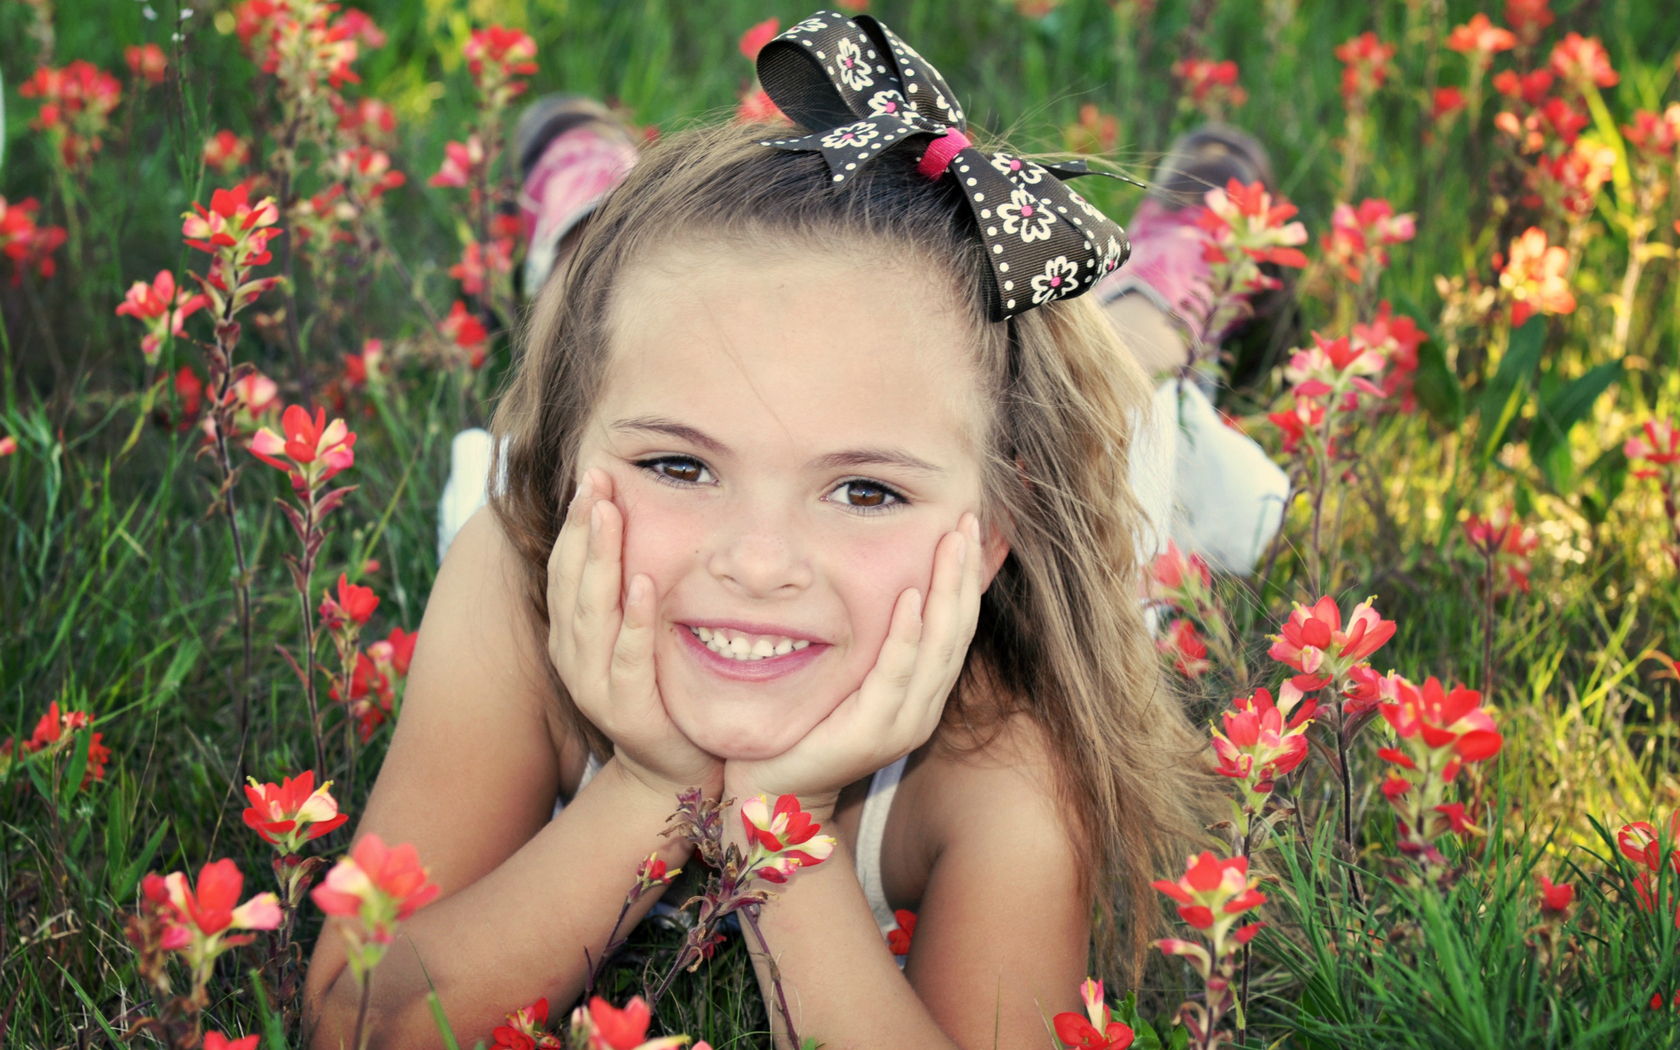 Mood Wallpaper children girl smile laughter bow Flowers nature